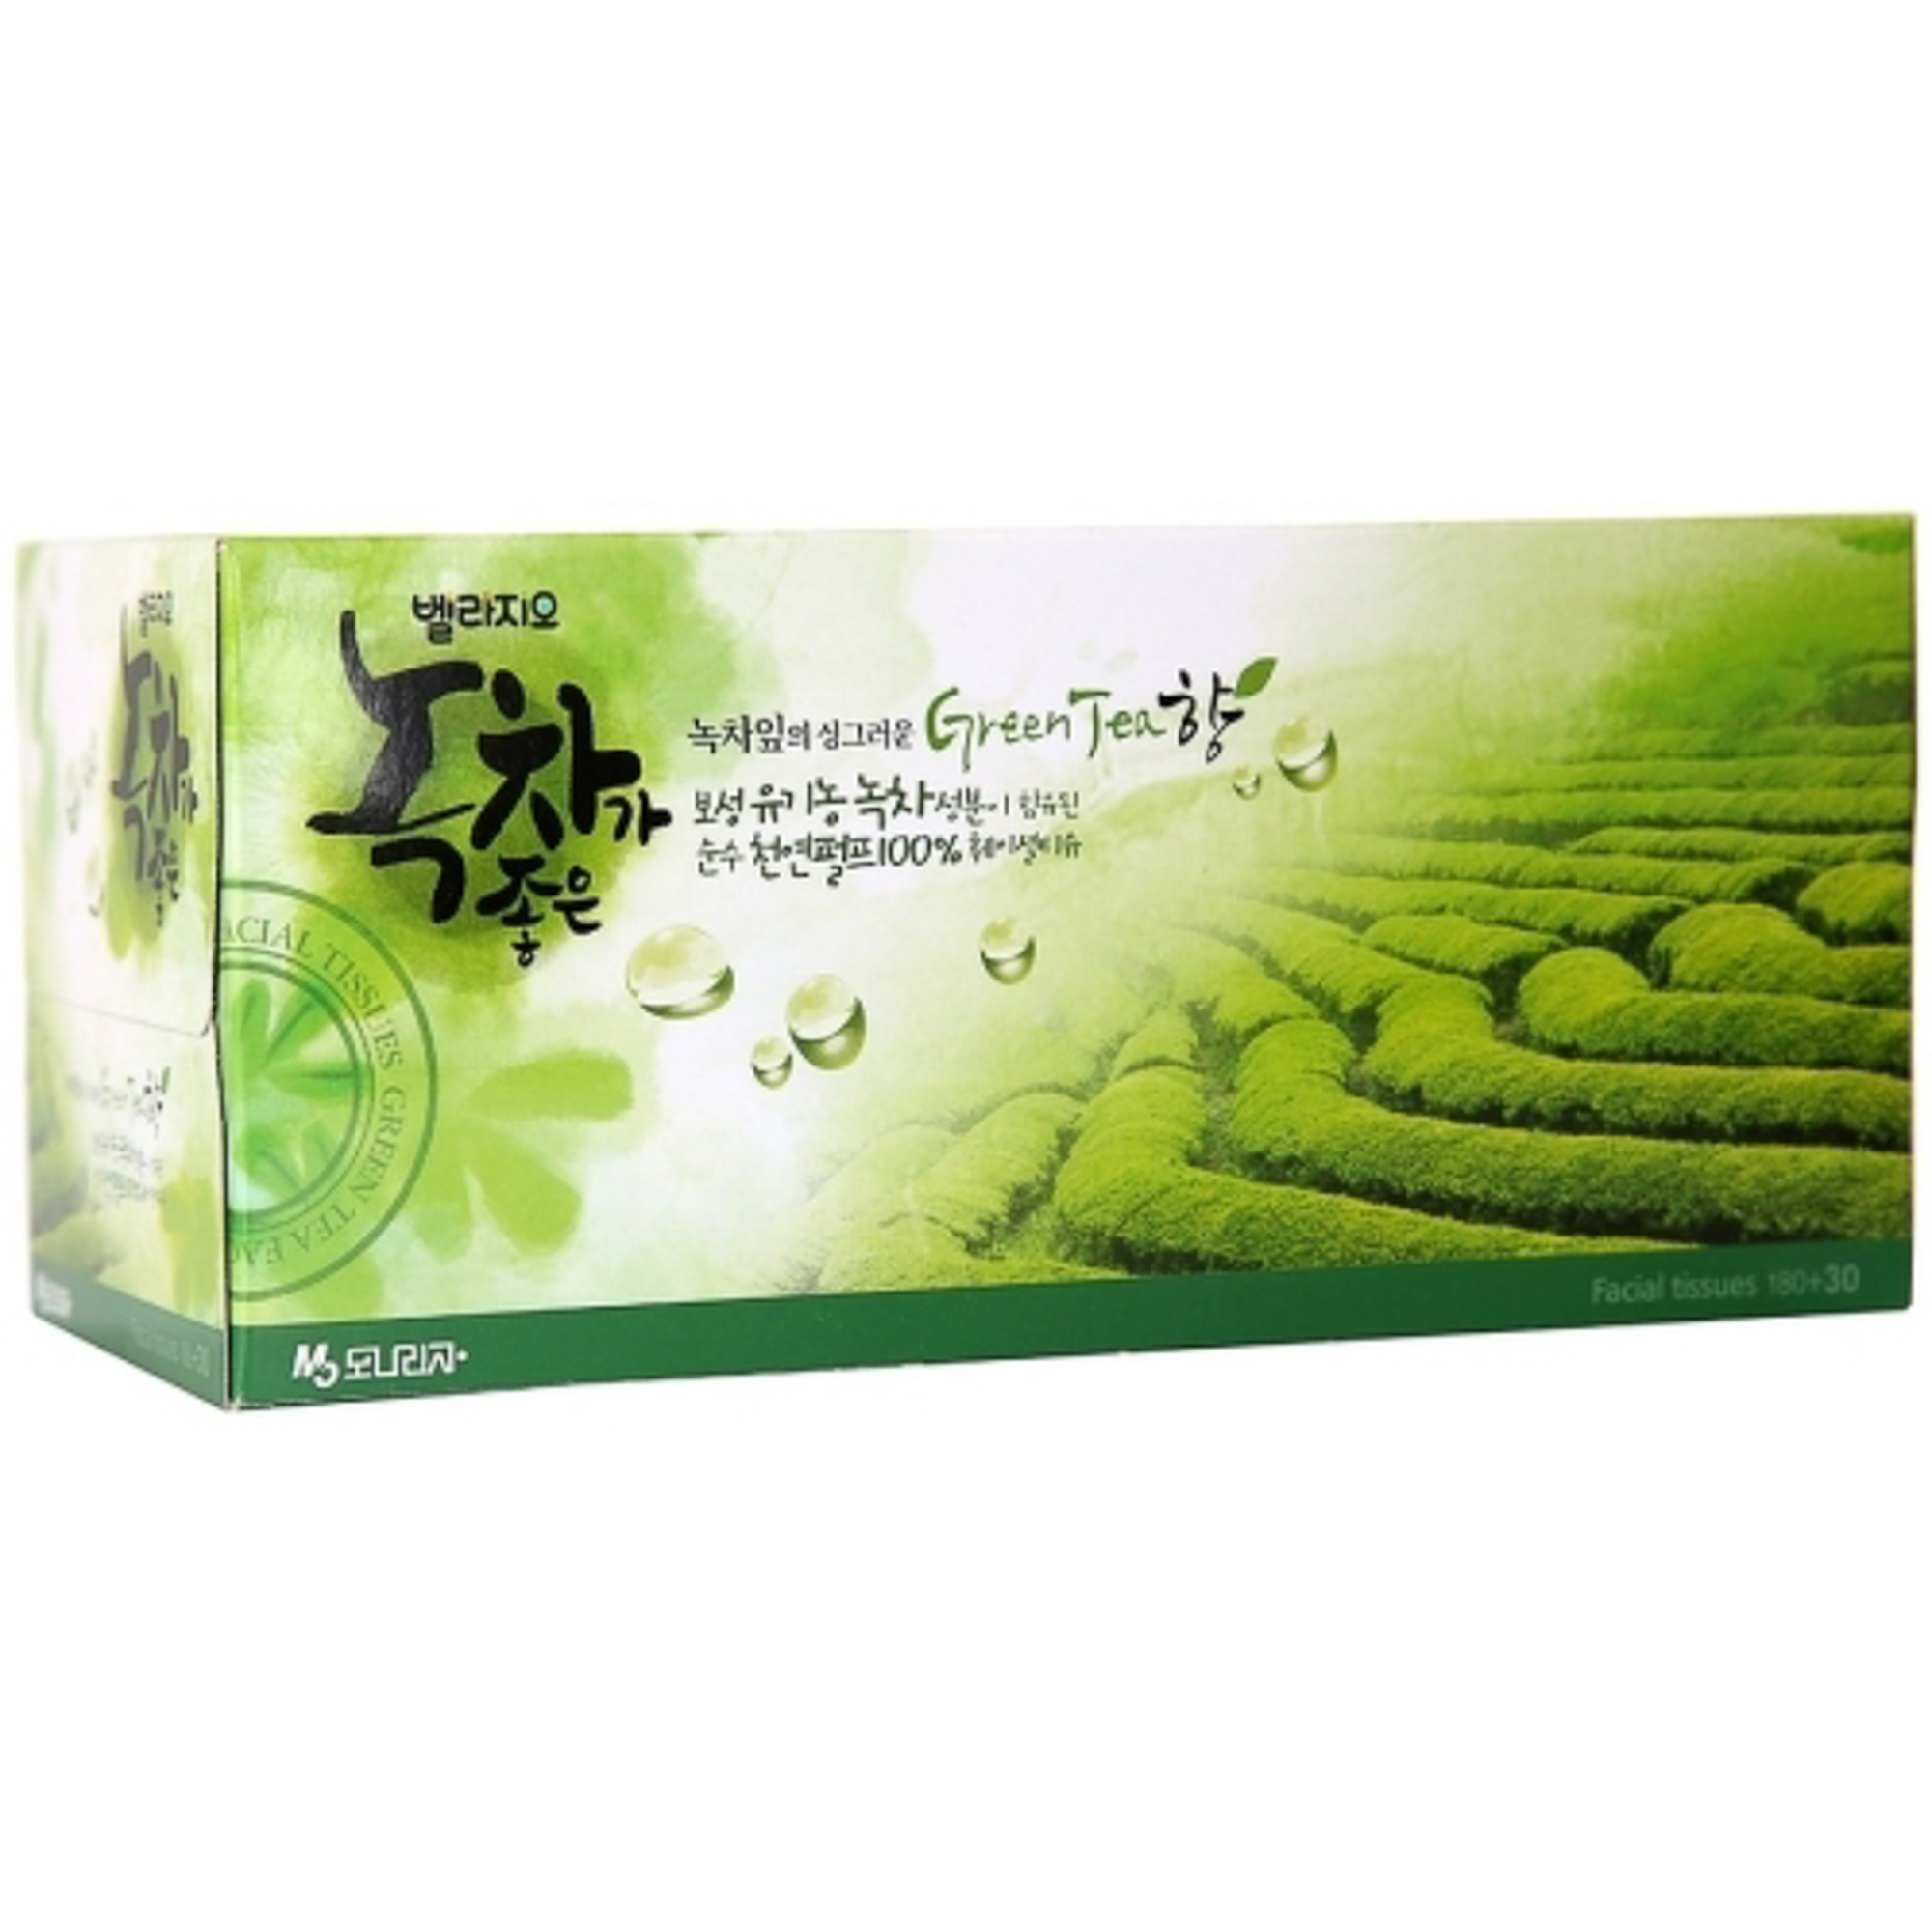 Салфетки для лица Bellagio Green Tea с экстрактом зеленого чая 210 шт 30 шт упаковка бумажные кружевные материалы с цветами